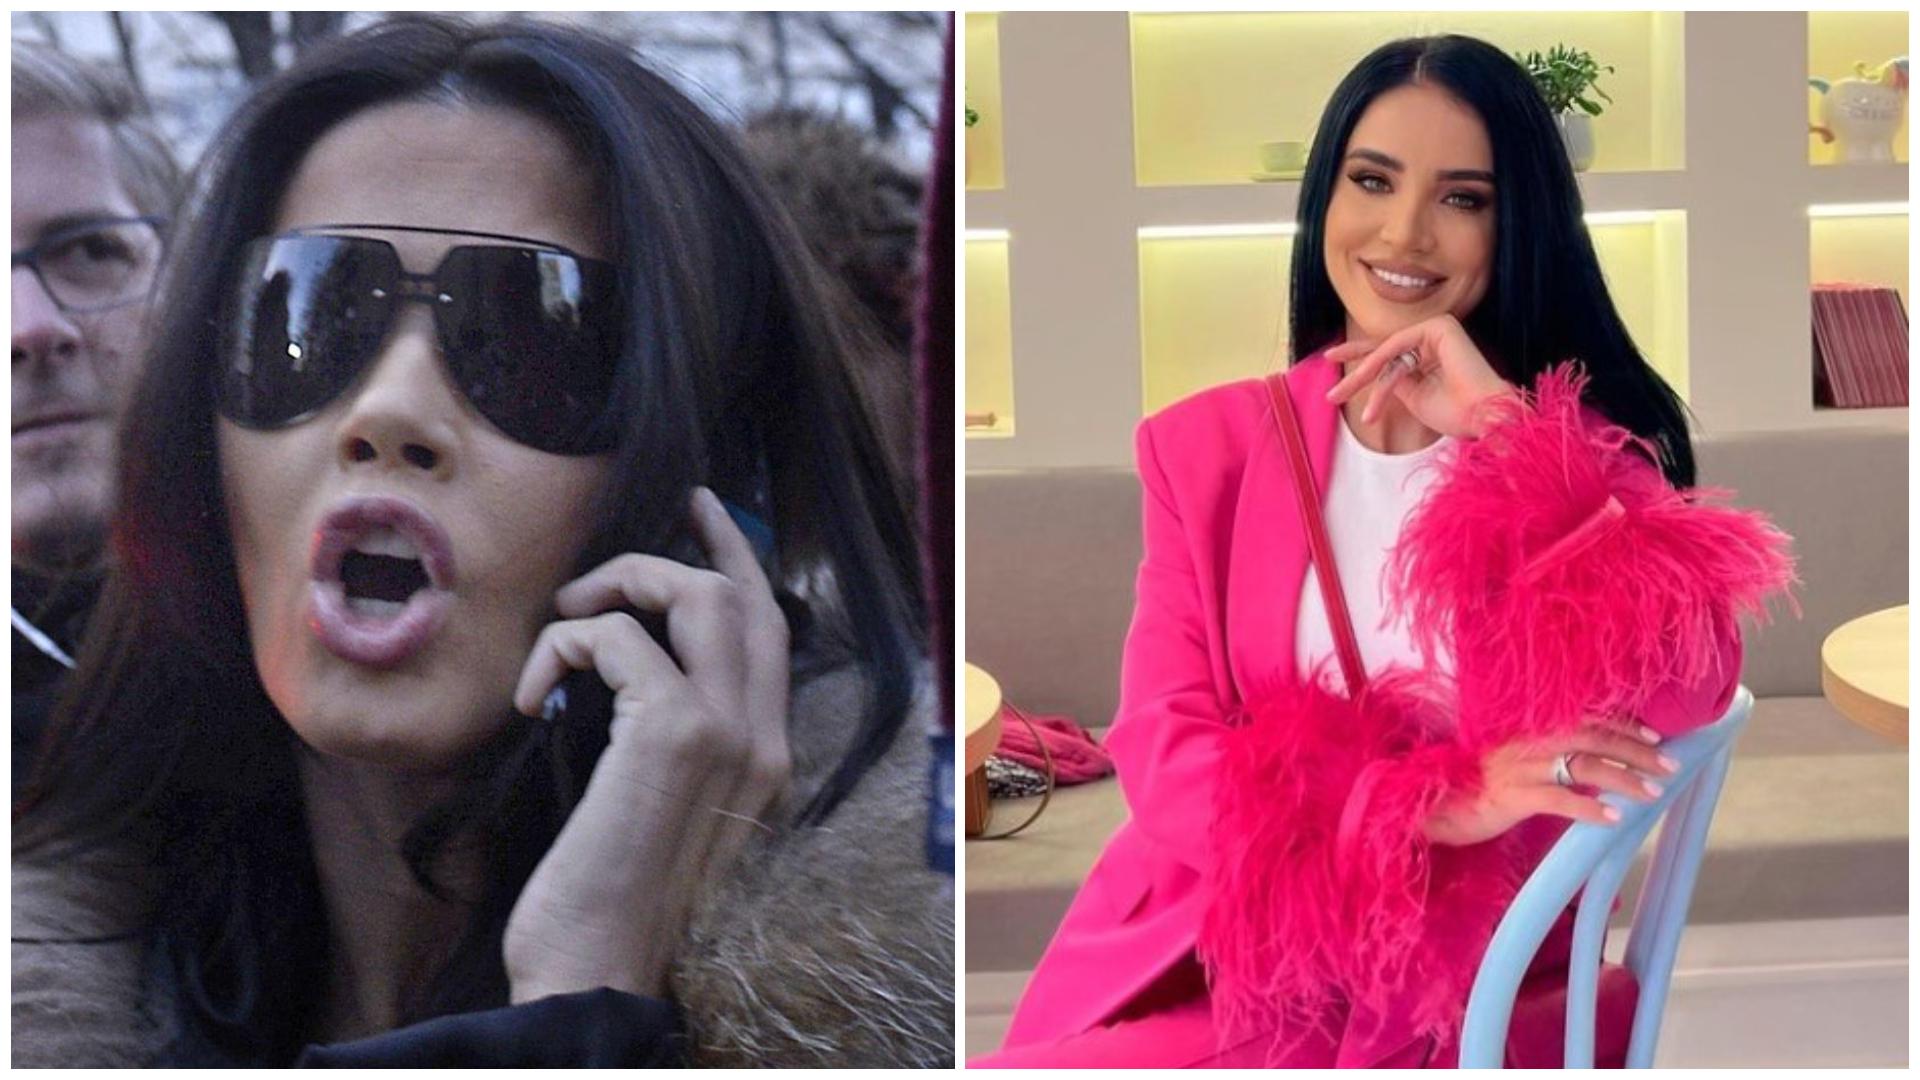 Colaj cu Oana Zăvoranu nervoasă în timp ce vorbește la telefon și cu Adelina Pestrițu într-un compleu roz